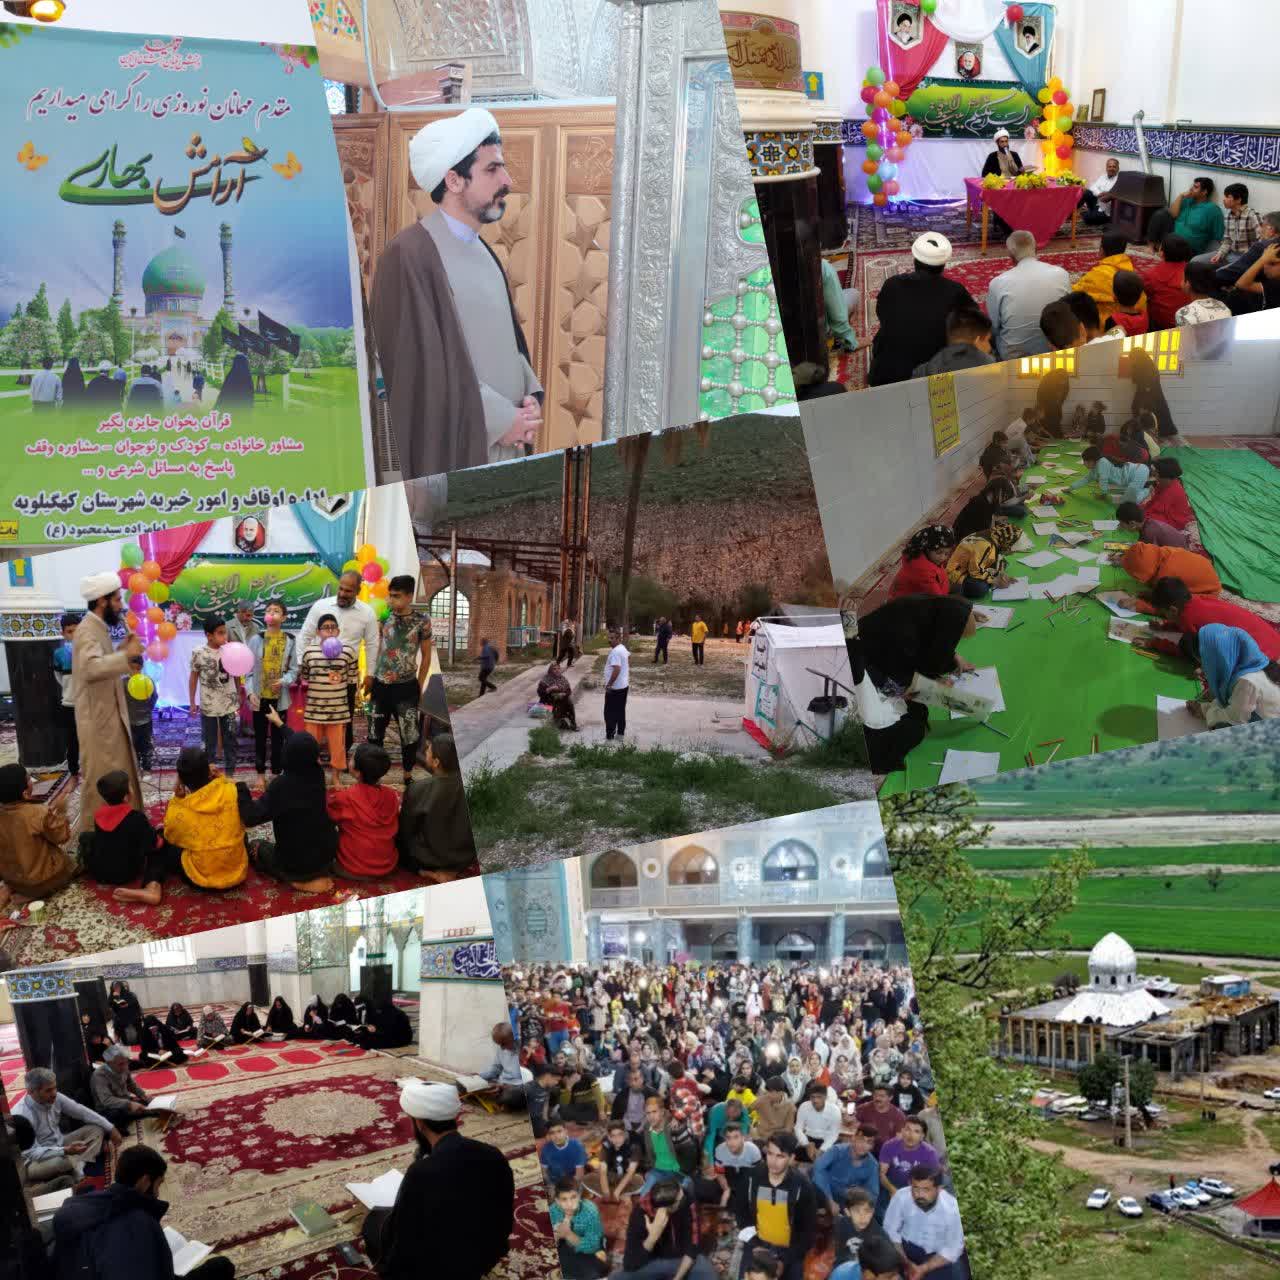 میزبانی از ۲۵۰ هزار نفر زائر و گردشگر مذهبی همزمان با اجرای طرح نوروزی آرامش بهاری 